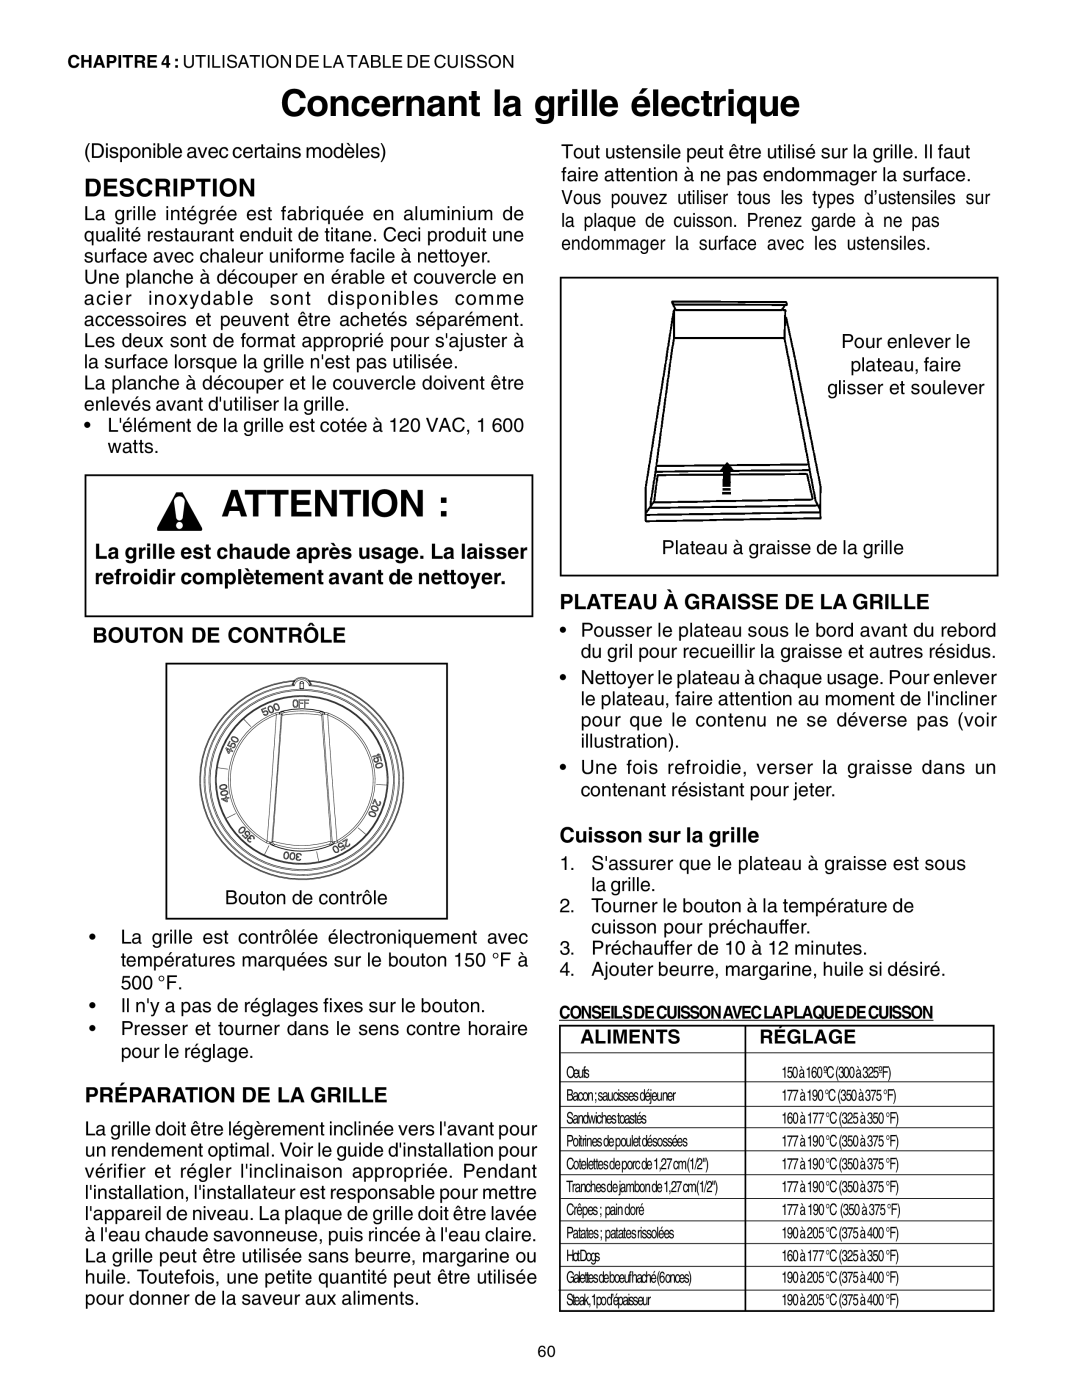 Thermador DP30 Concernant la grille électrique, Préparation De La Grille, Plateau À Graisse De La Grille, Description 